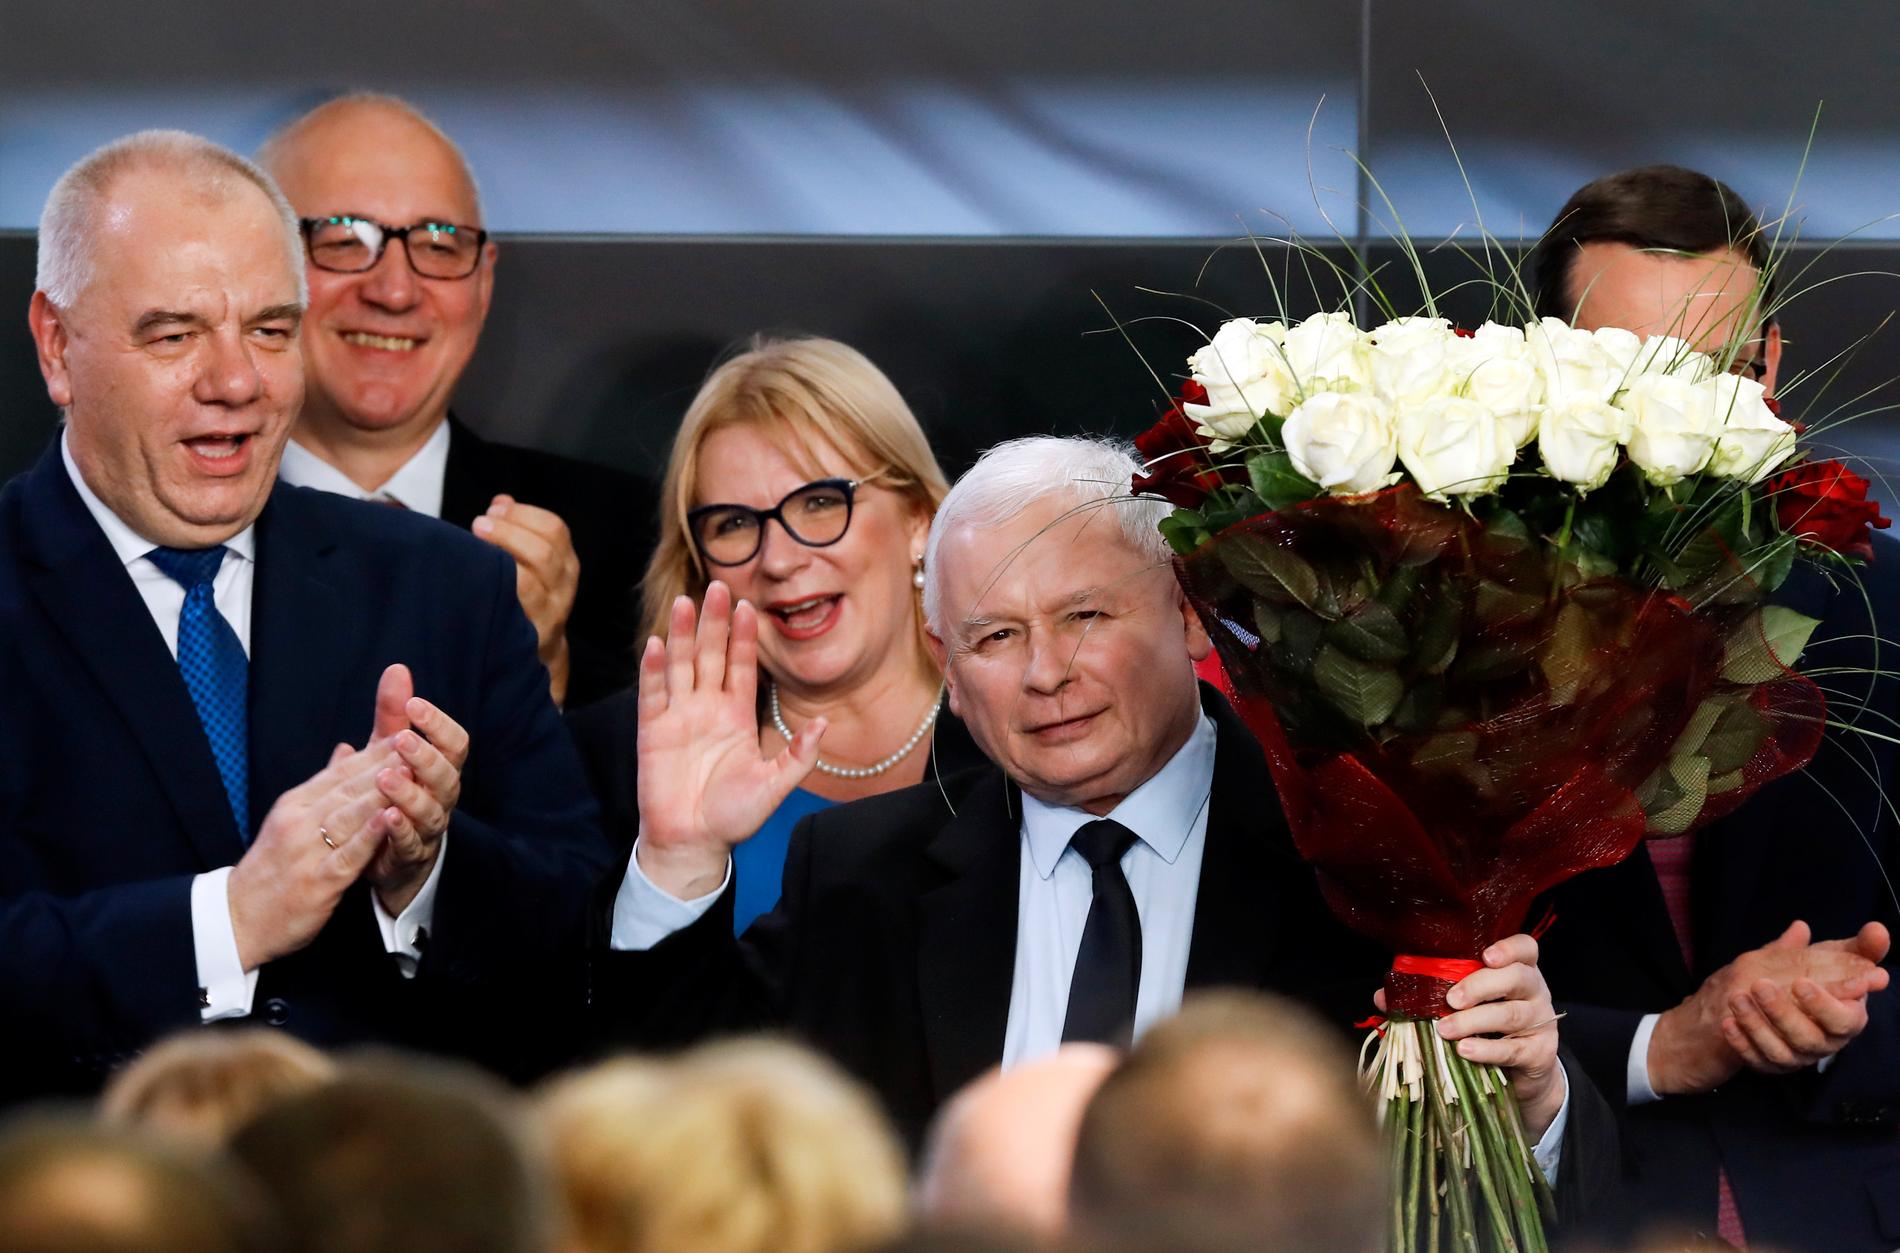 PIS partiledare Jaroslaw Kaczynski utropade sig till segrare redan på söndagskvällen.